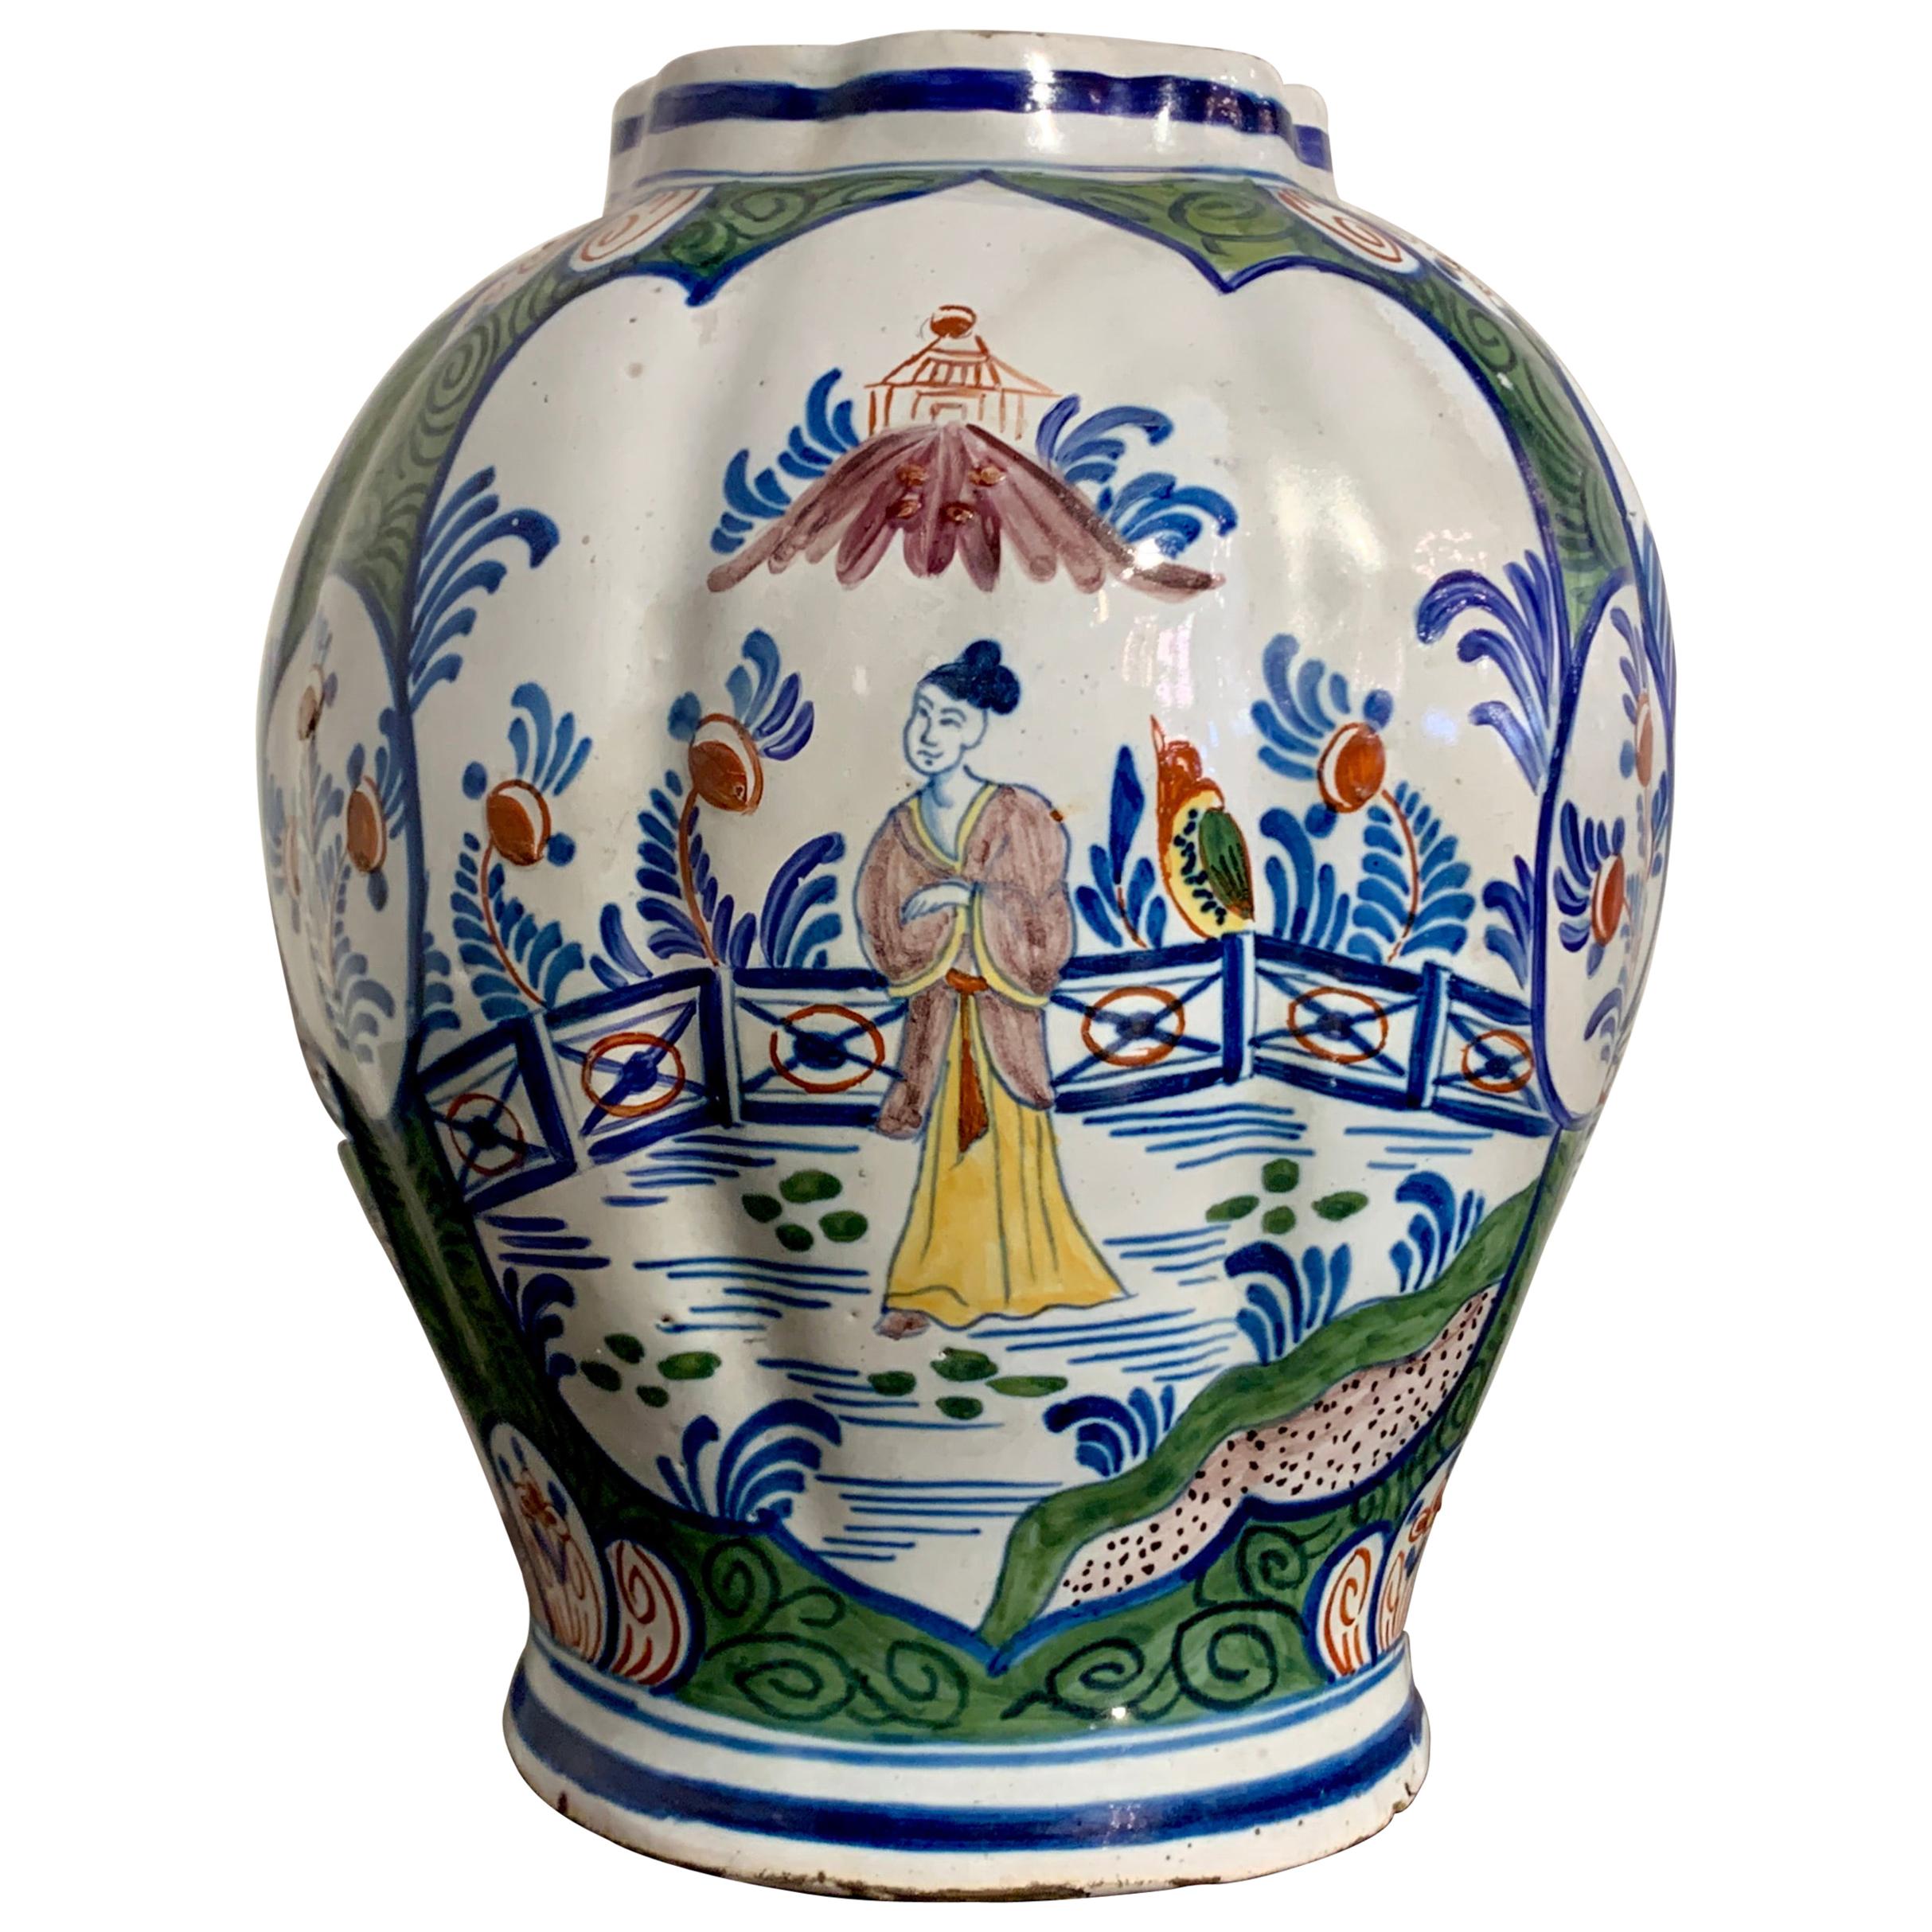 Chinoiserie Dutch Delft Polychrome Faience Lobed Jar, 18th Century, Holland